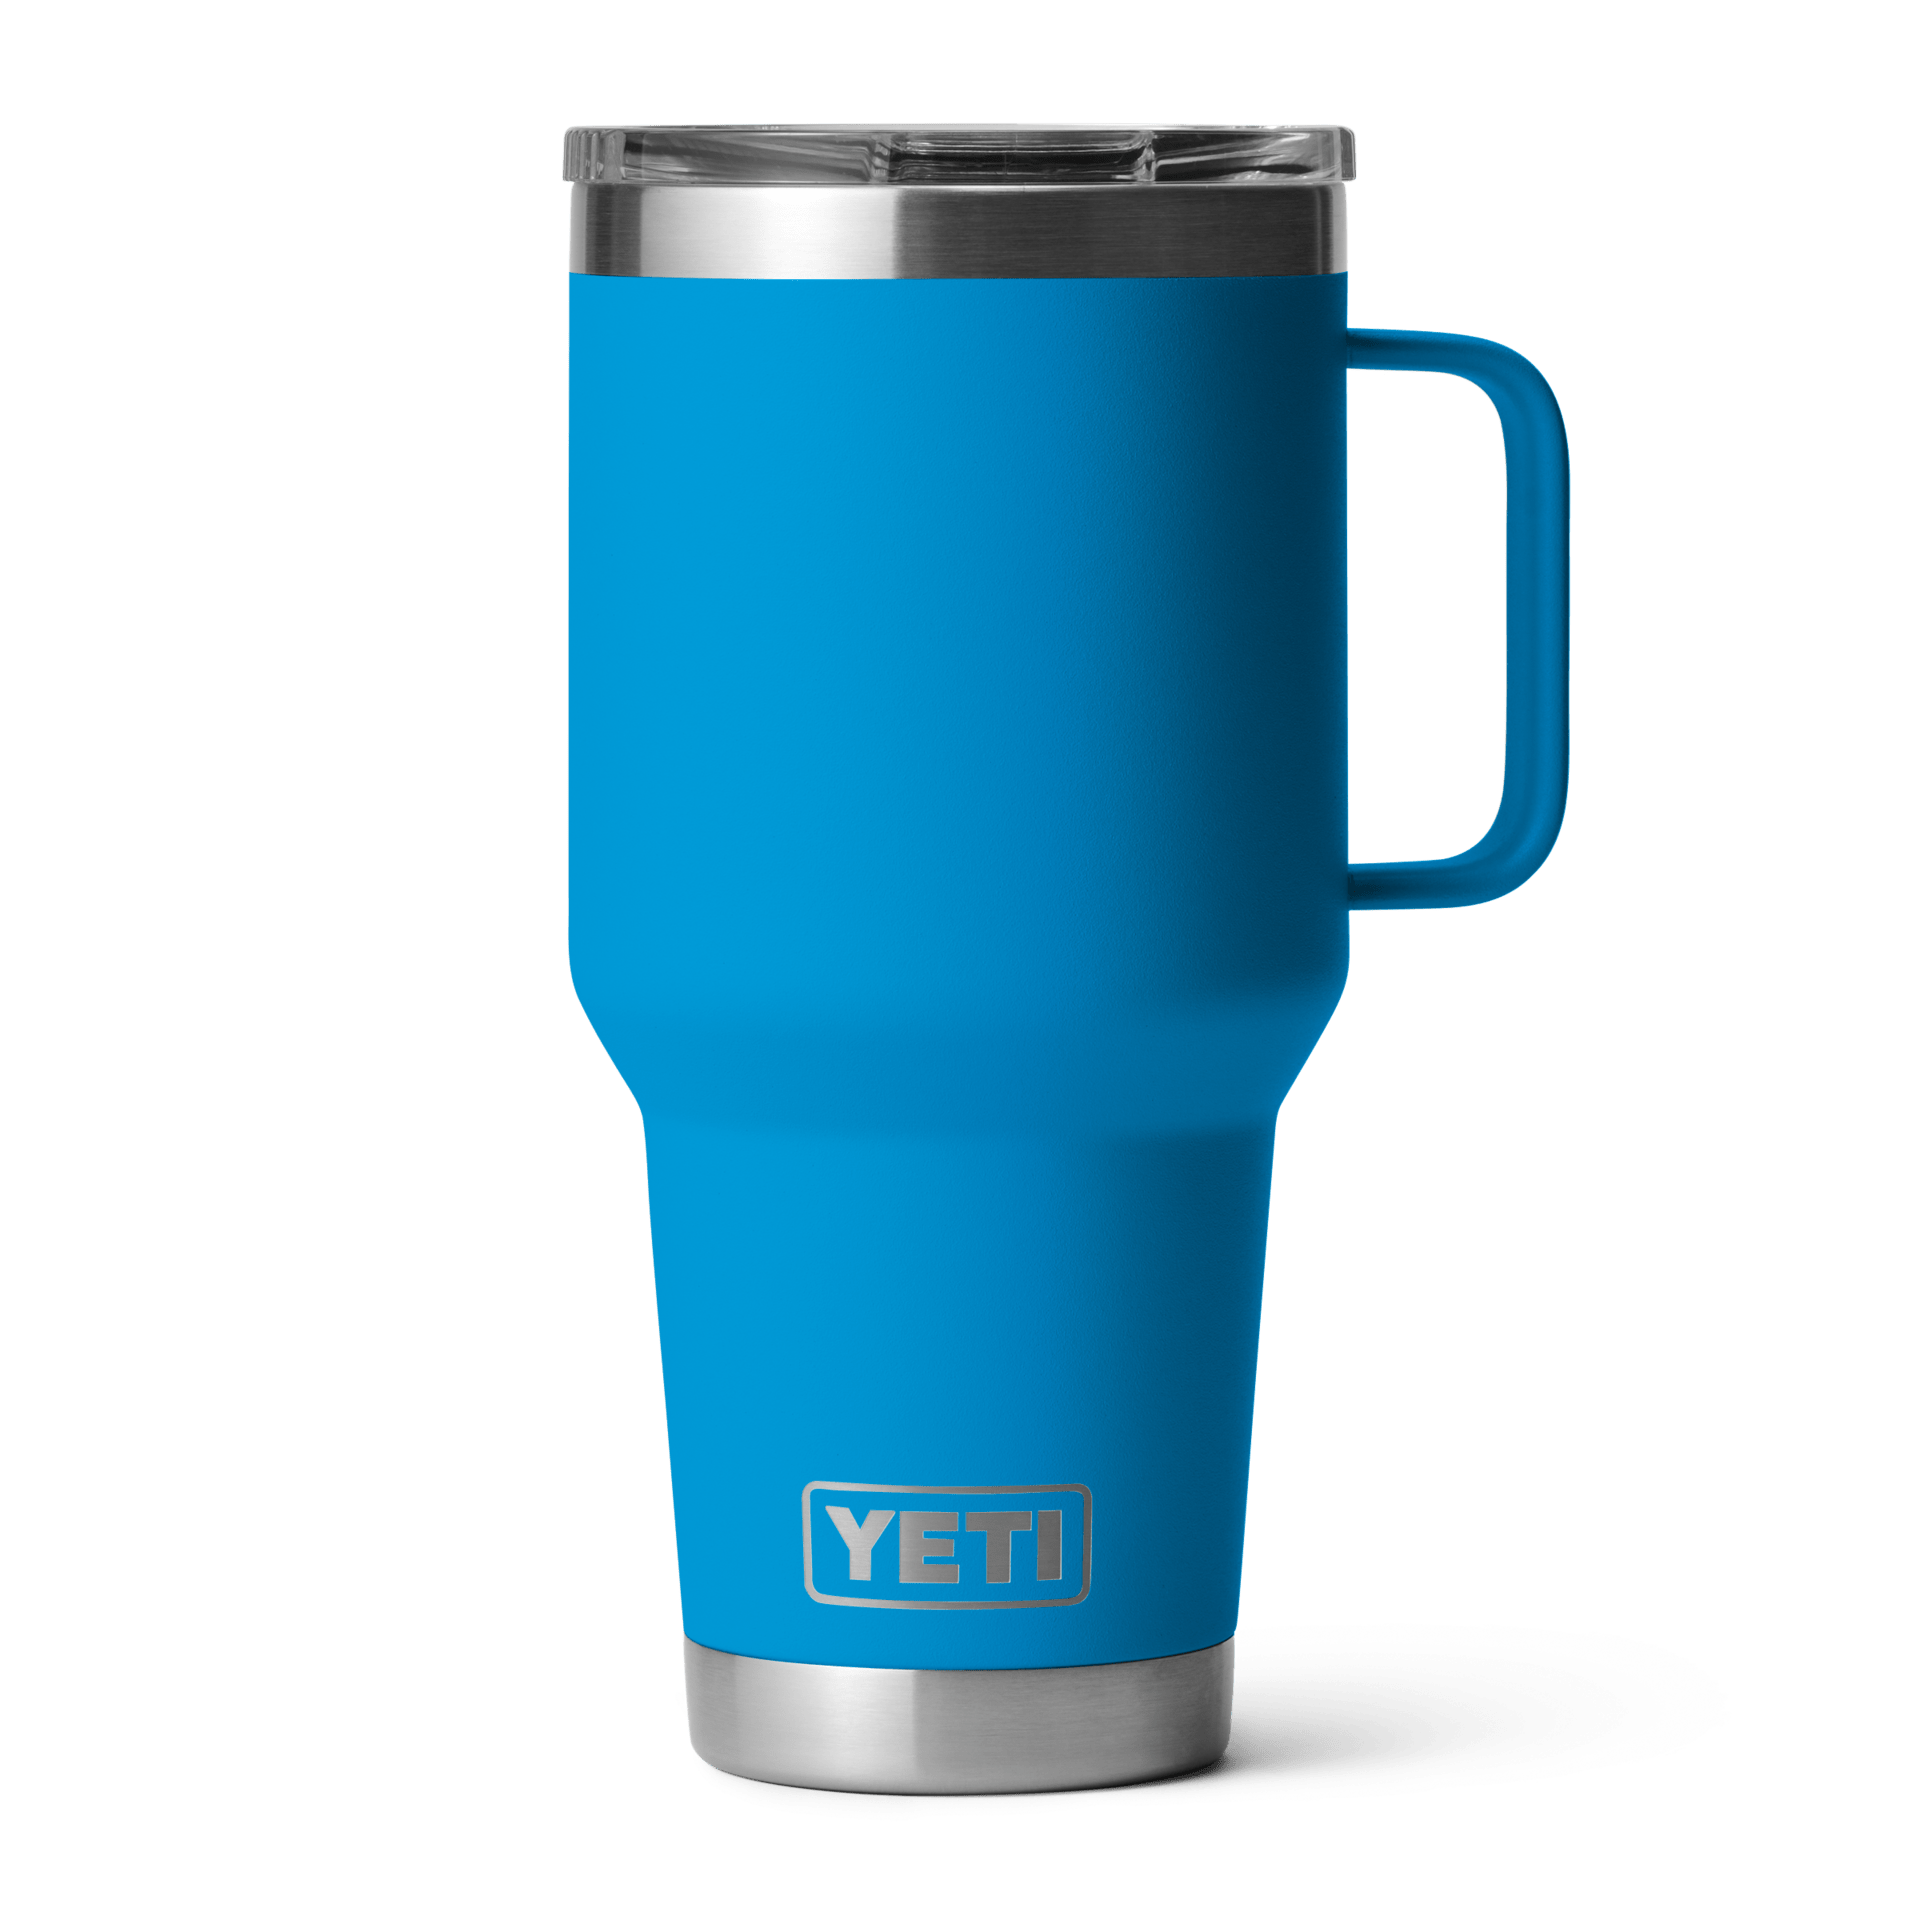 YETI YETI Rambler 30oz Travel Mug with Stronghold Lid - Big Wave Blue